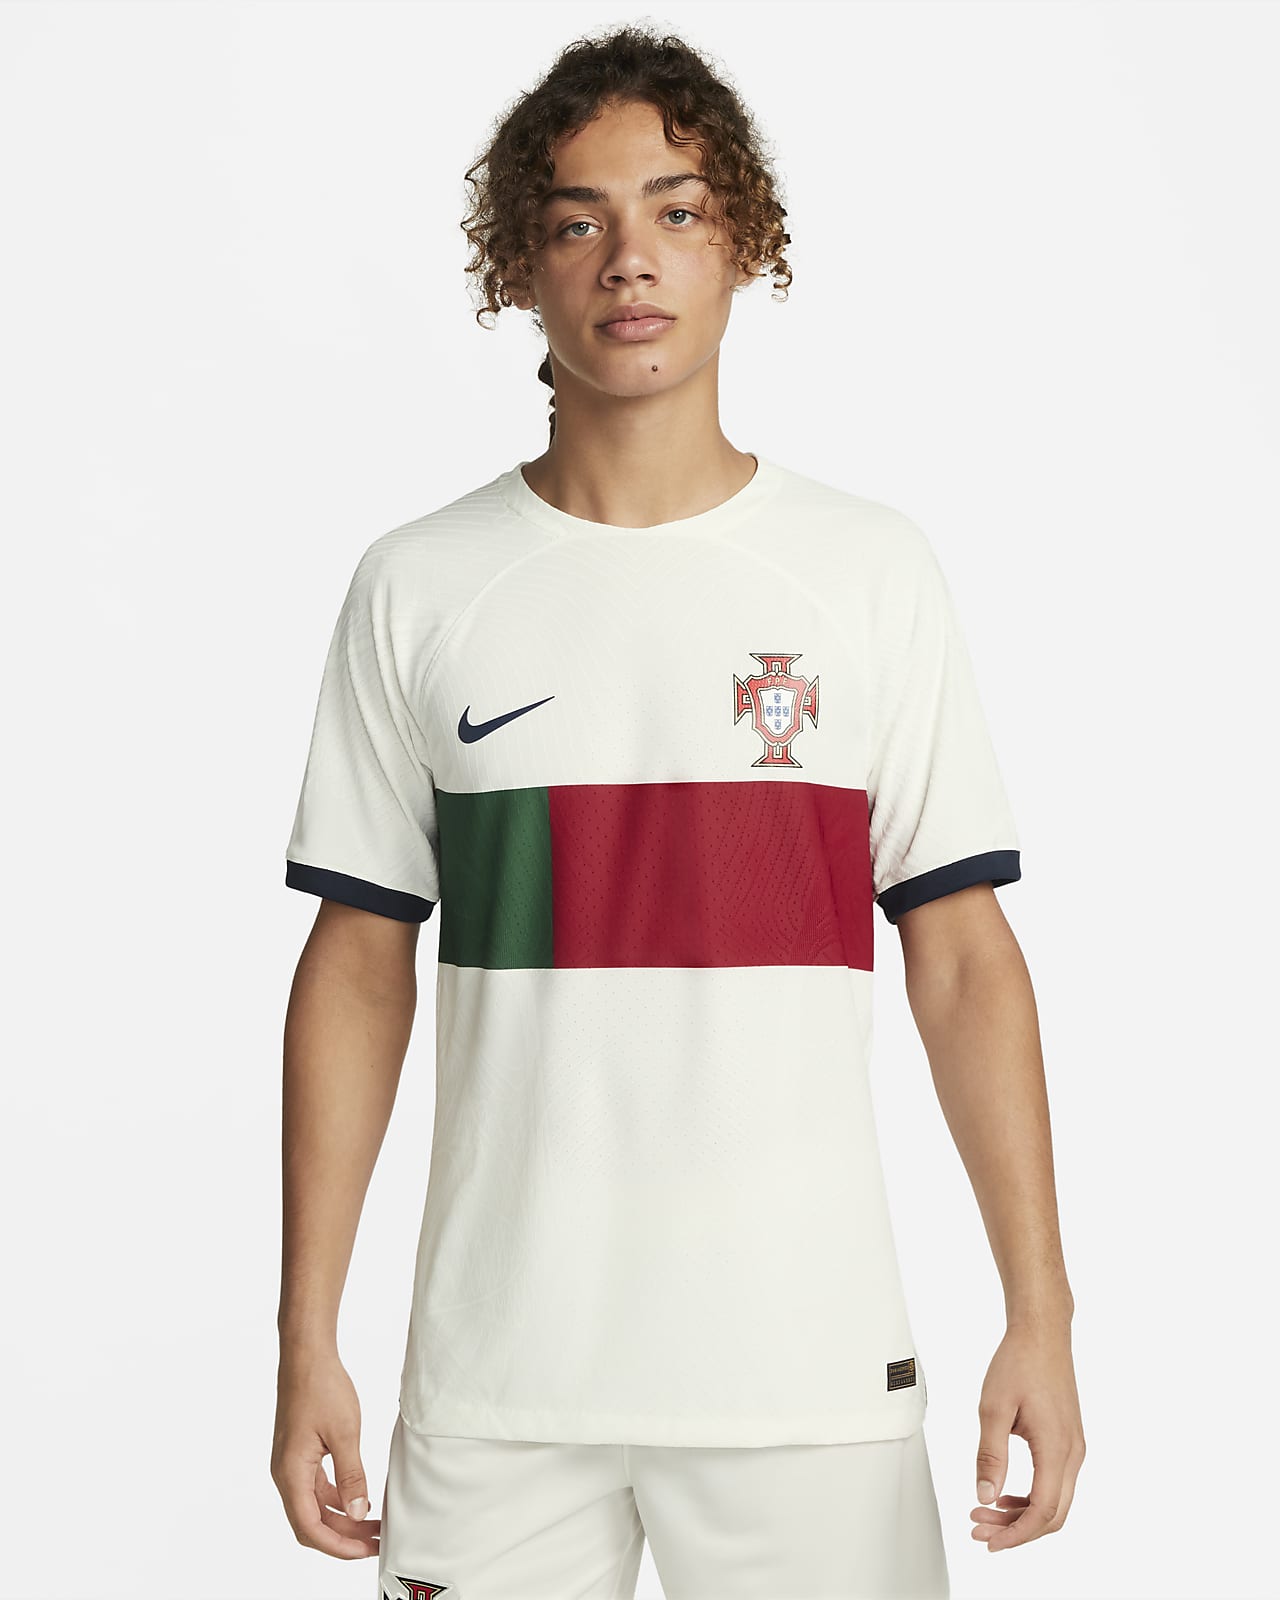 2022/23 赛季葡萄牙队客场球员版 Nike Dri-FIT ADV 男子足球球衣